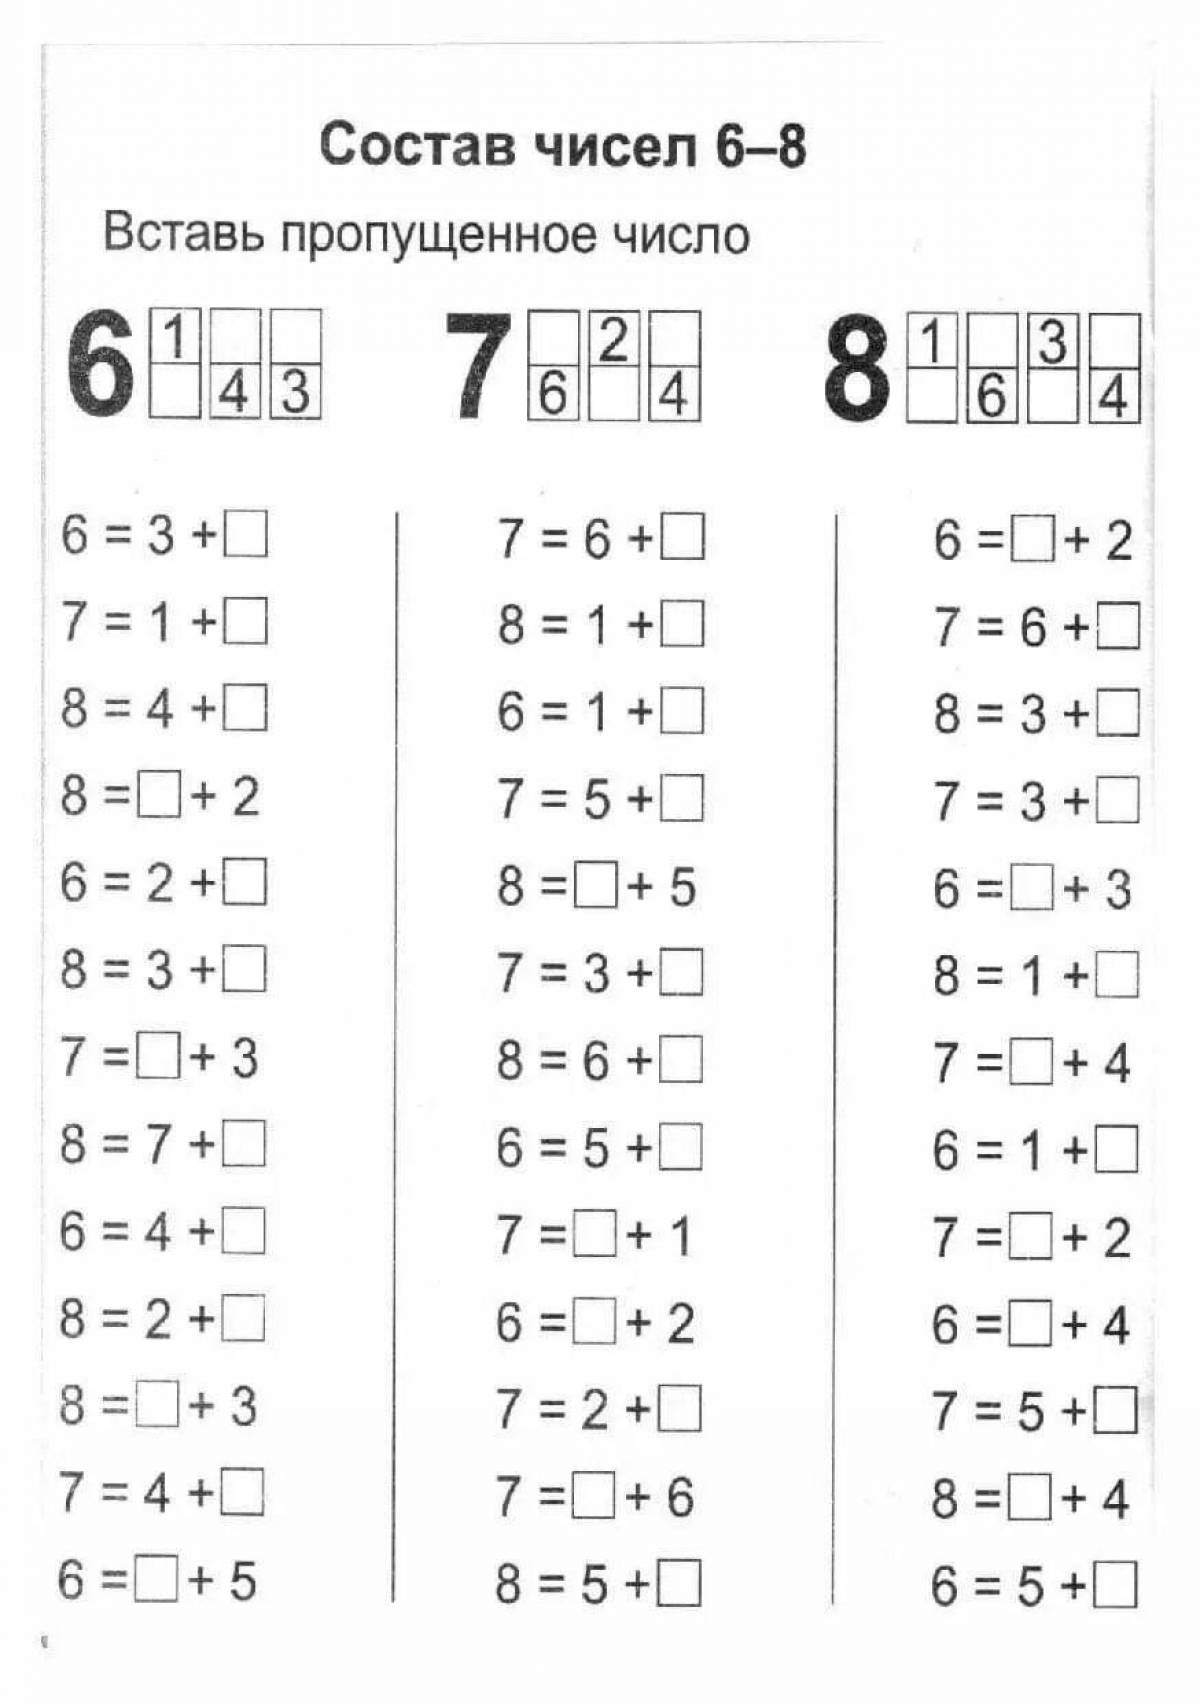 Состав чисел 1 класс в пределах 10 #32